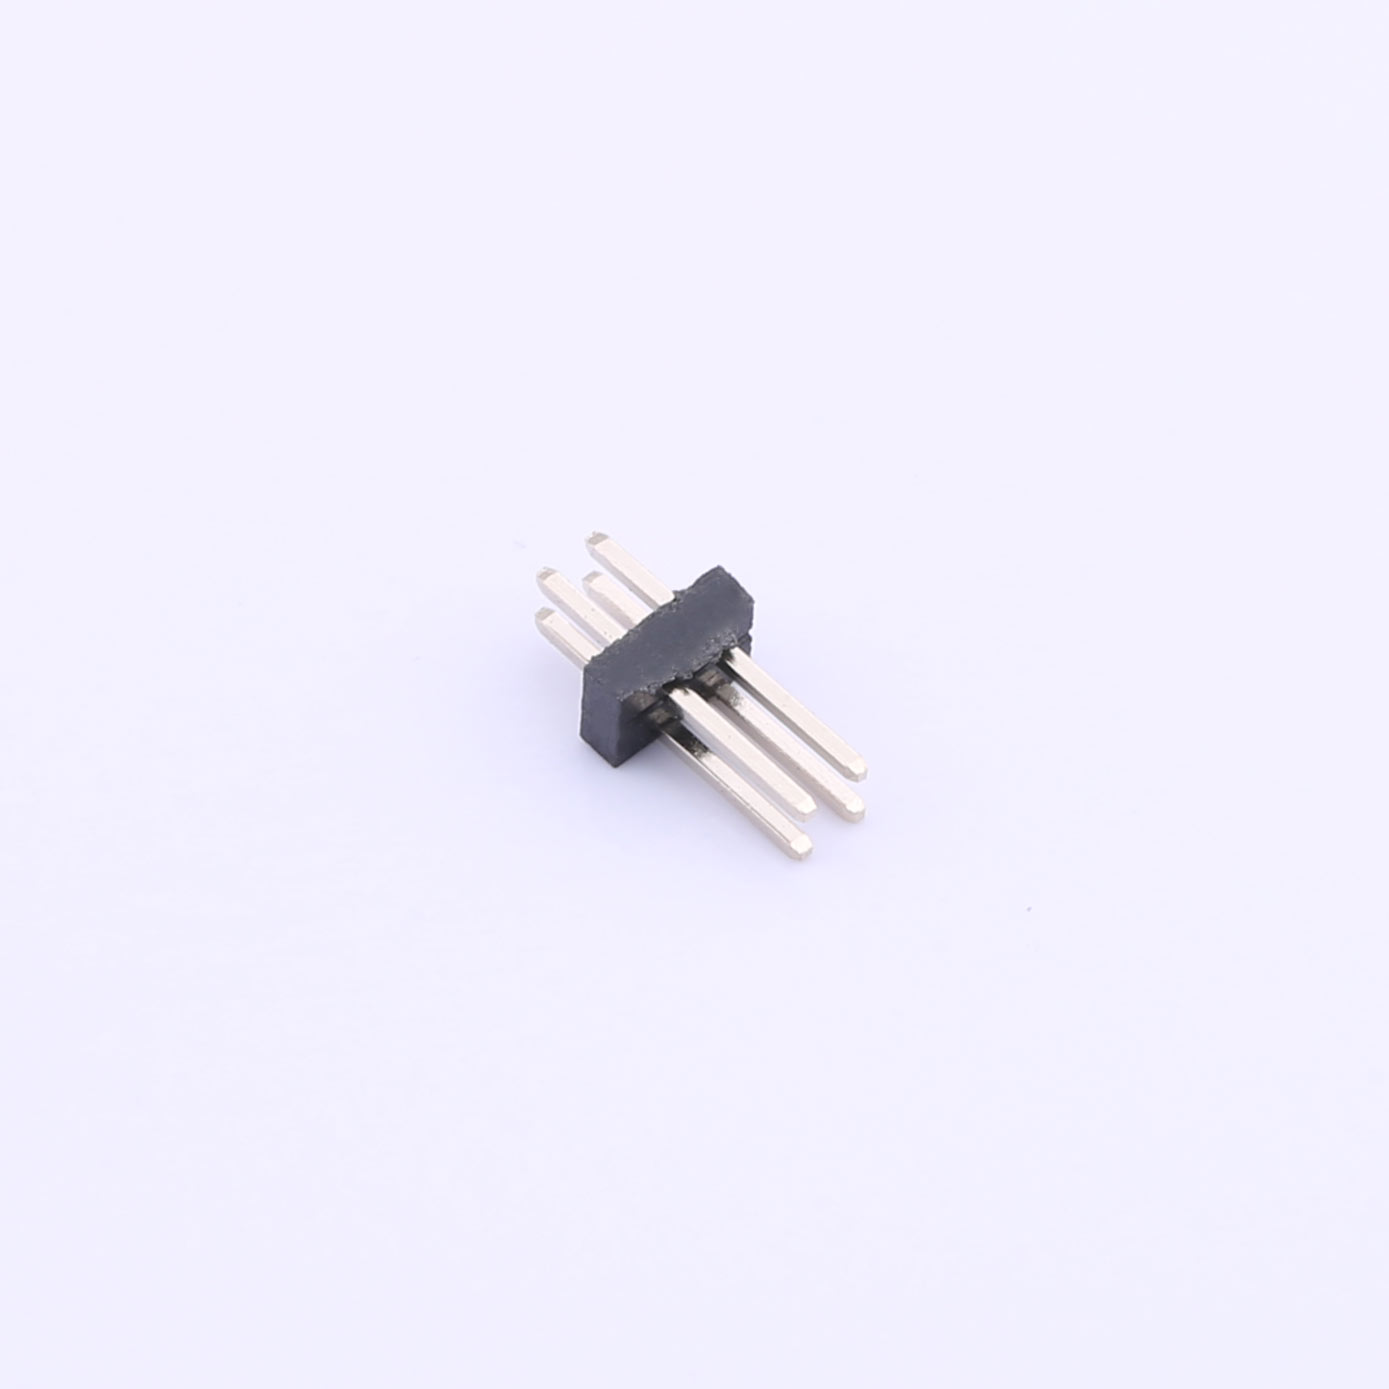 Kinghelm 1.27mm Pin Header Connector 2 Row*2 Pin 1A -  KH-1.27PH180-2X2P-L7.2